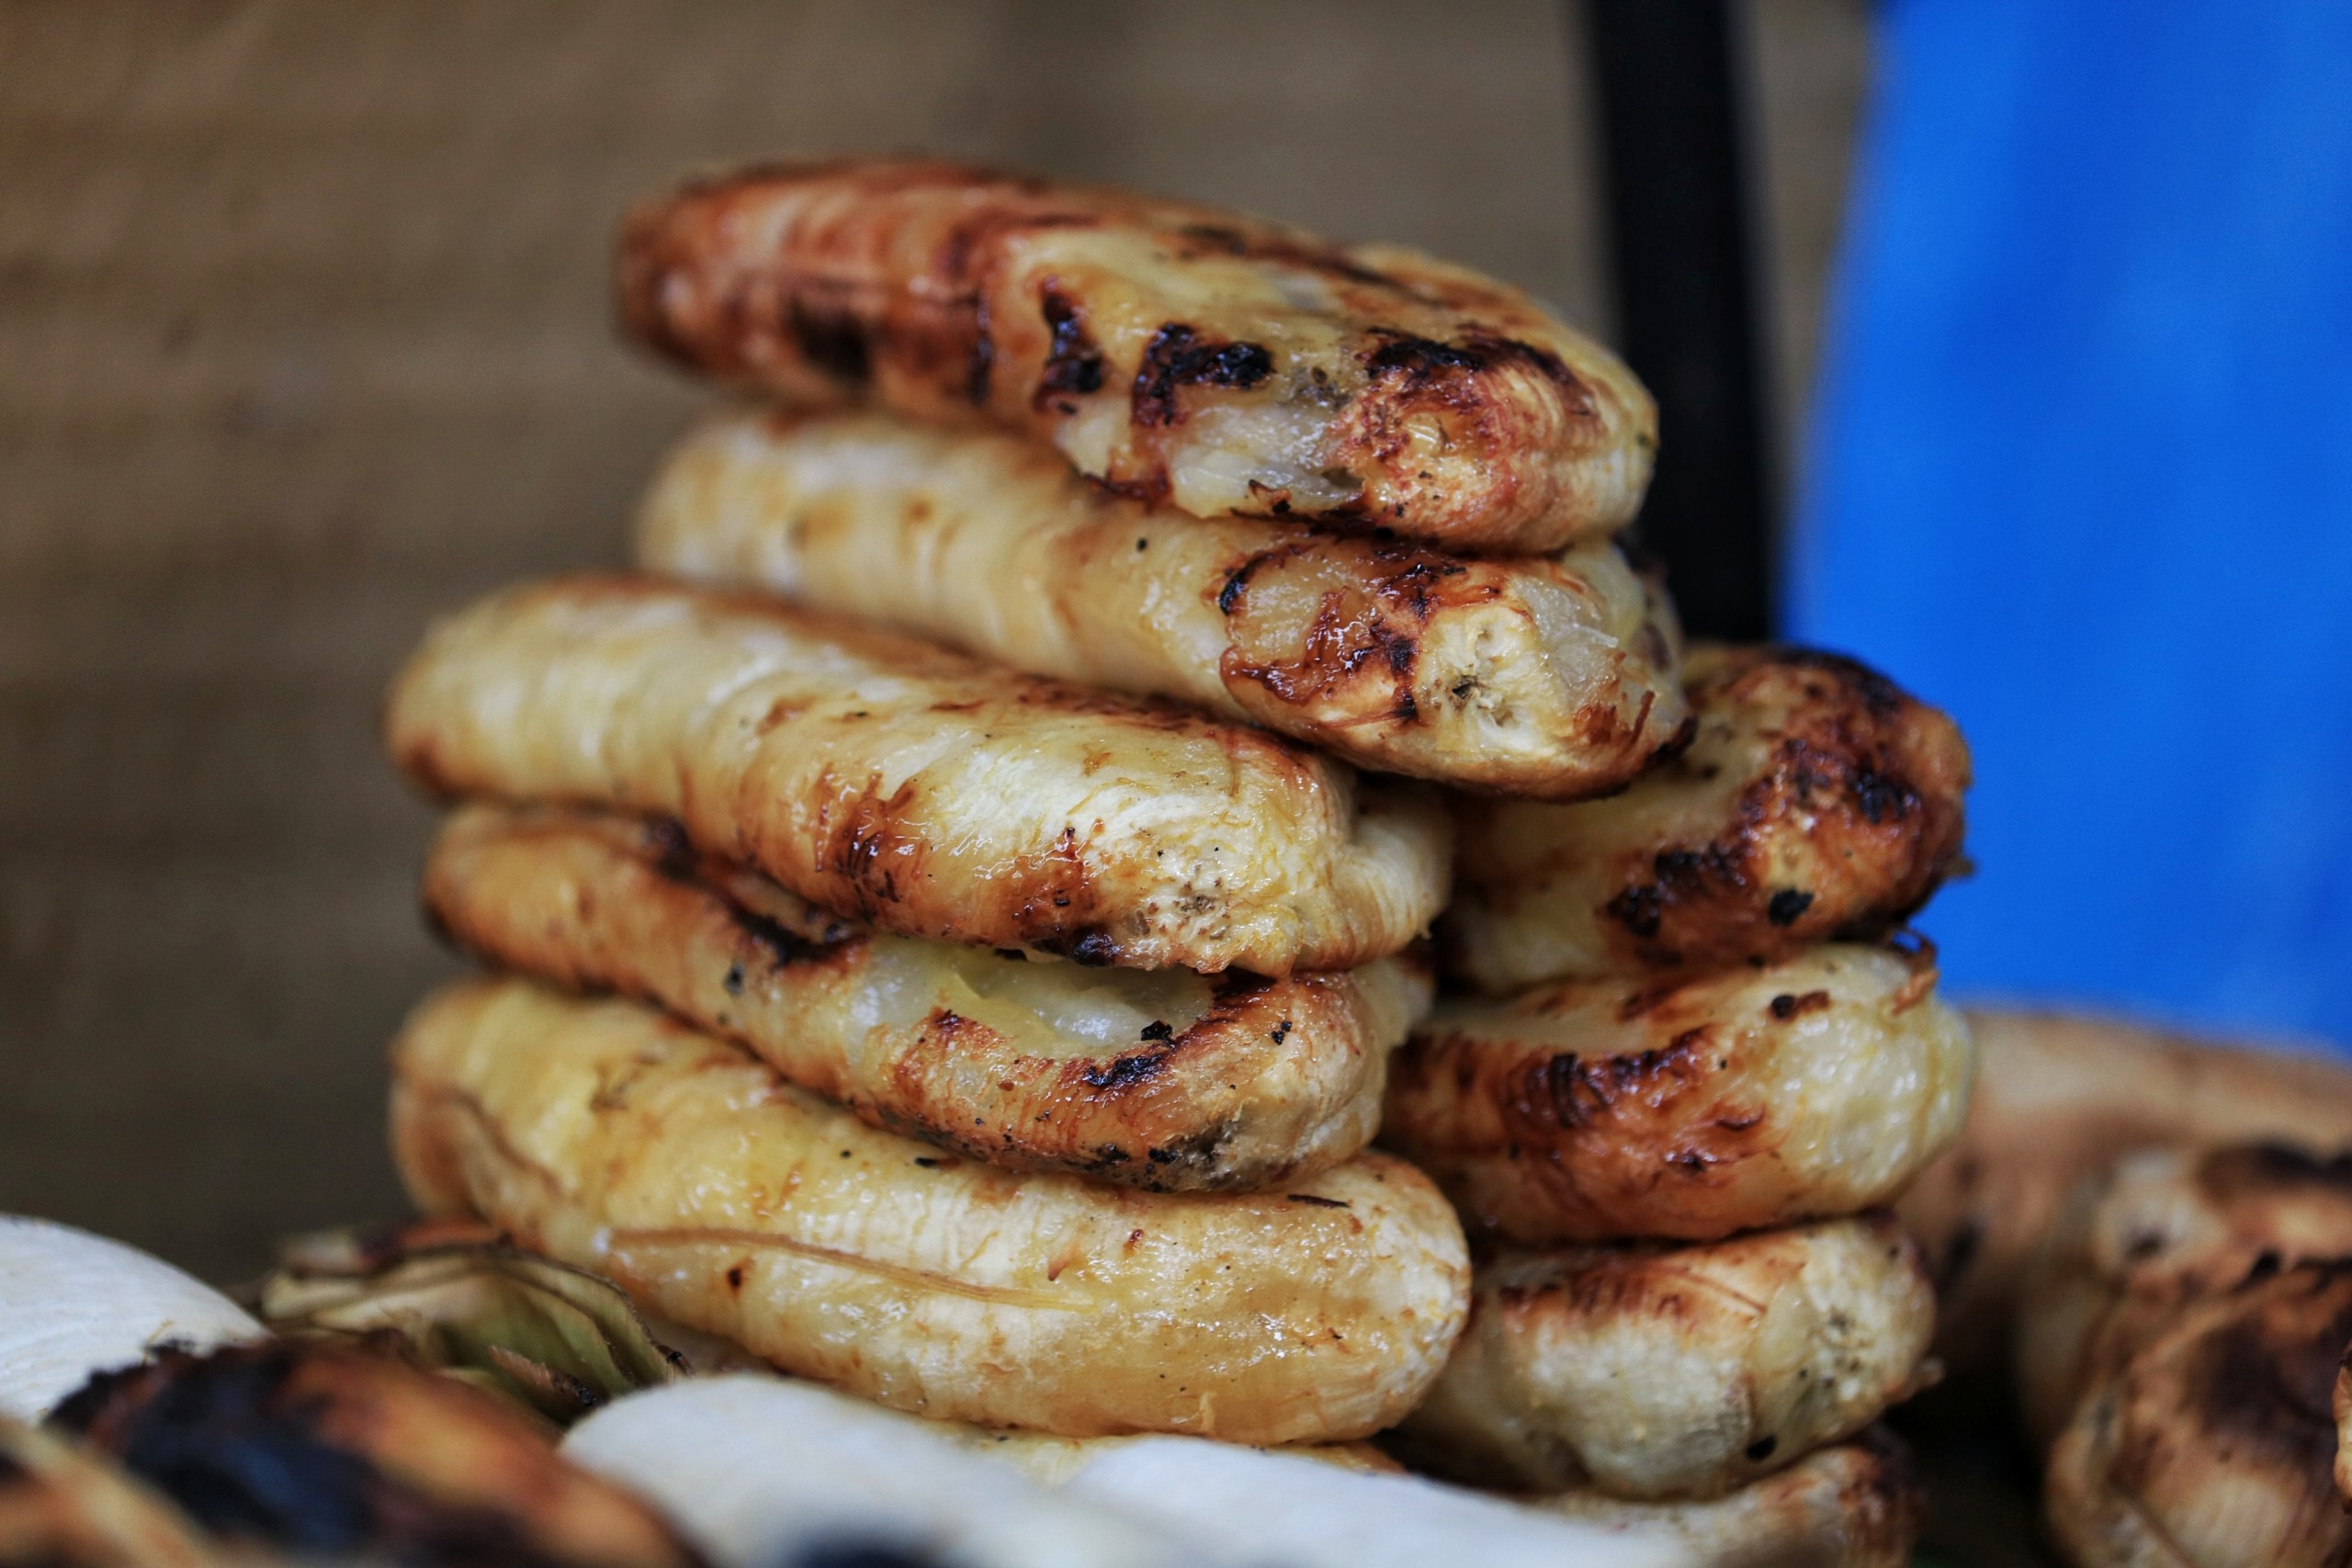 Gánh chuối nướng vỉa hè gần chợ Bình Tây: Có khách ăn lần 6 dĩa, còn mua mang về